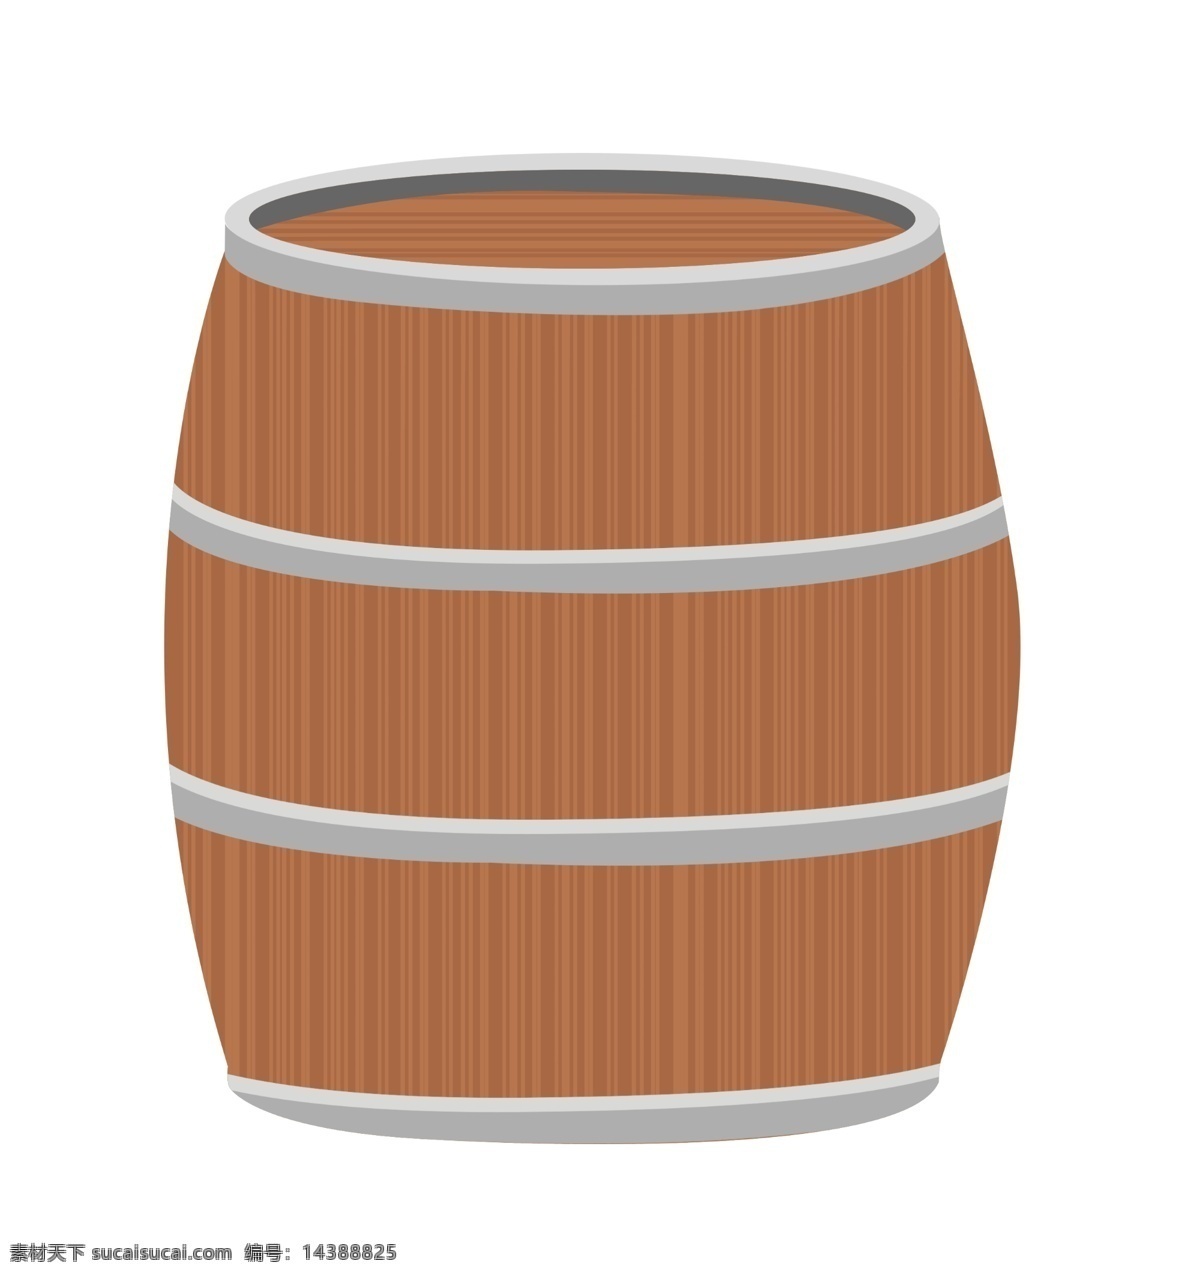 圆形 木质 水桶 插图 生活用品 卡通木桶 圆形木桶 木质圆筒 装水木桶 漂亮的木桶 纹理木桶 家庭用品